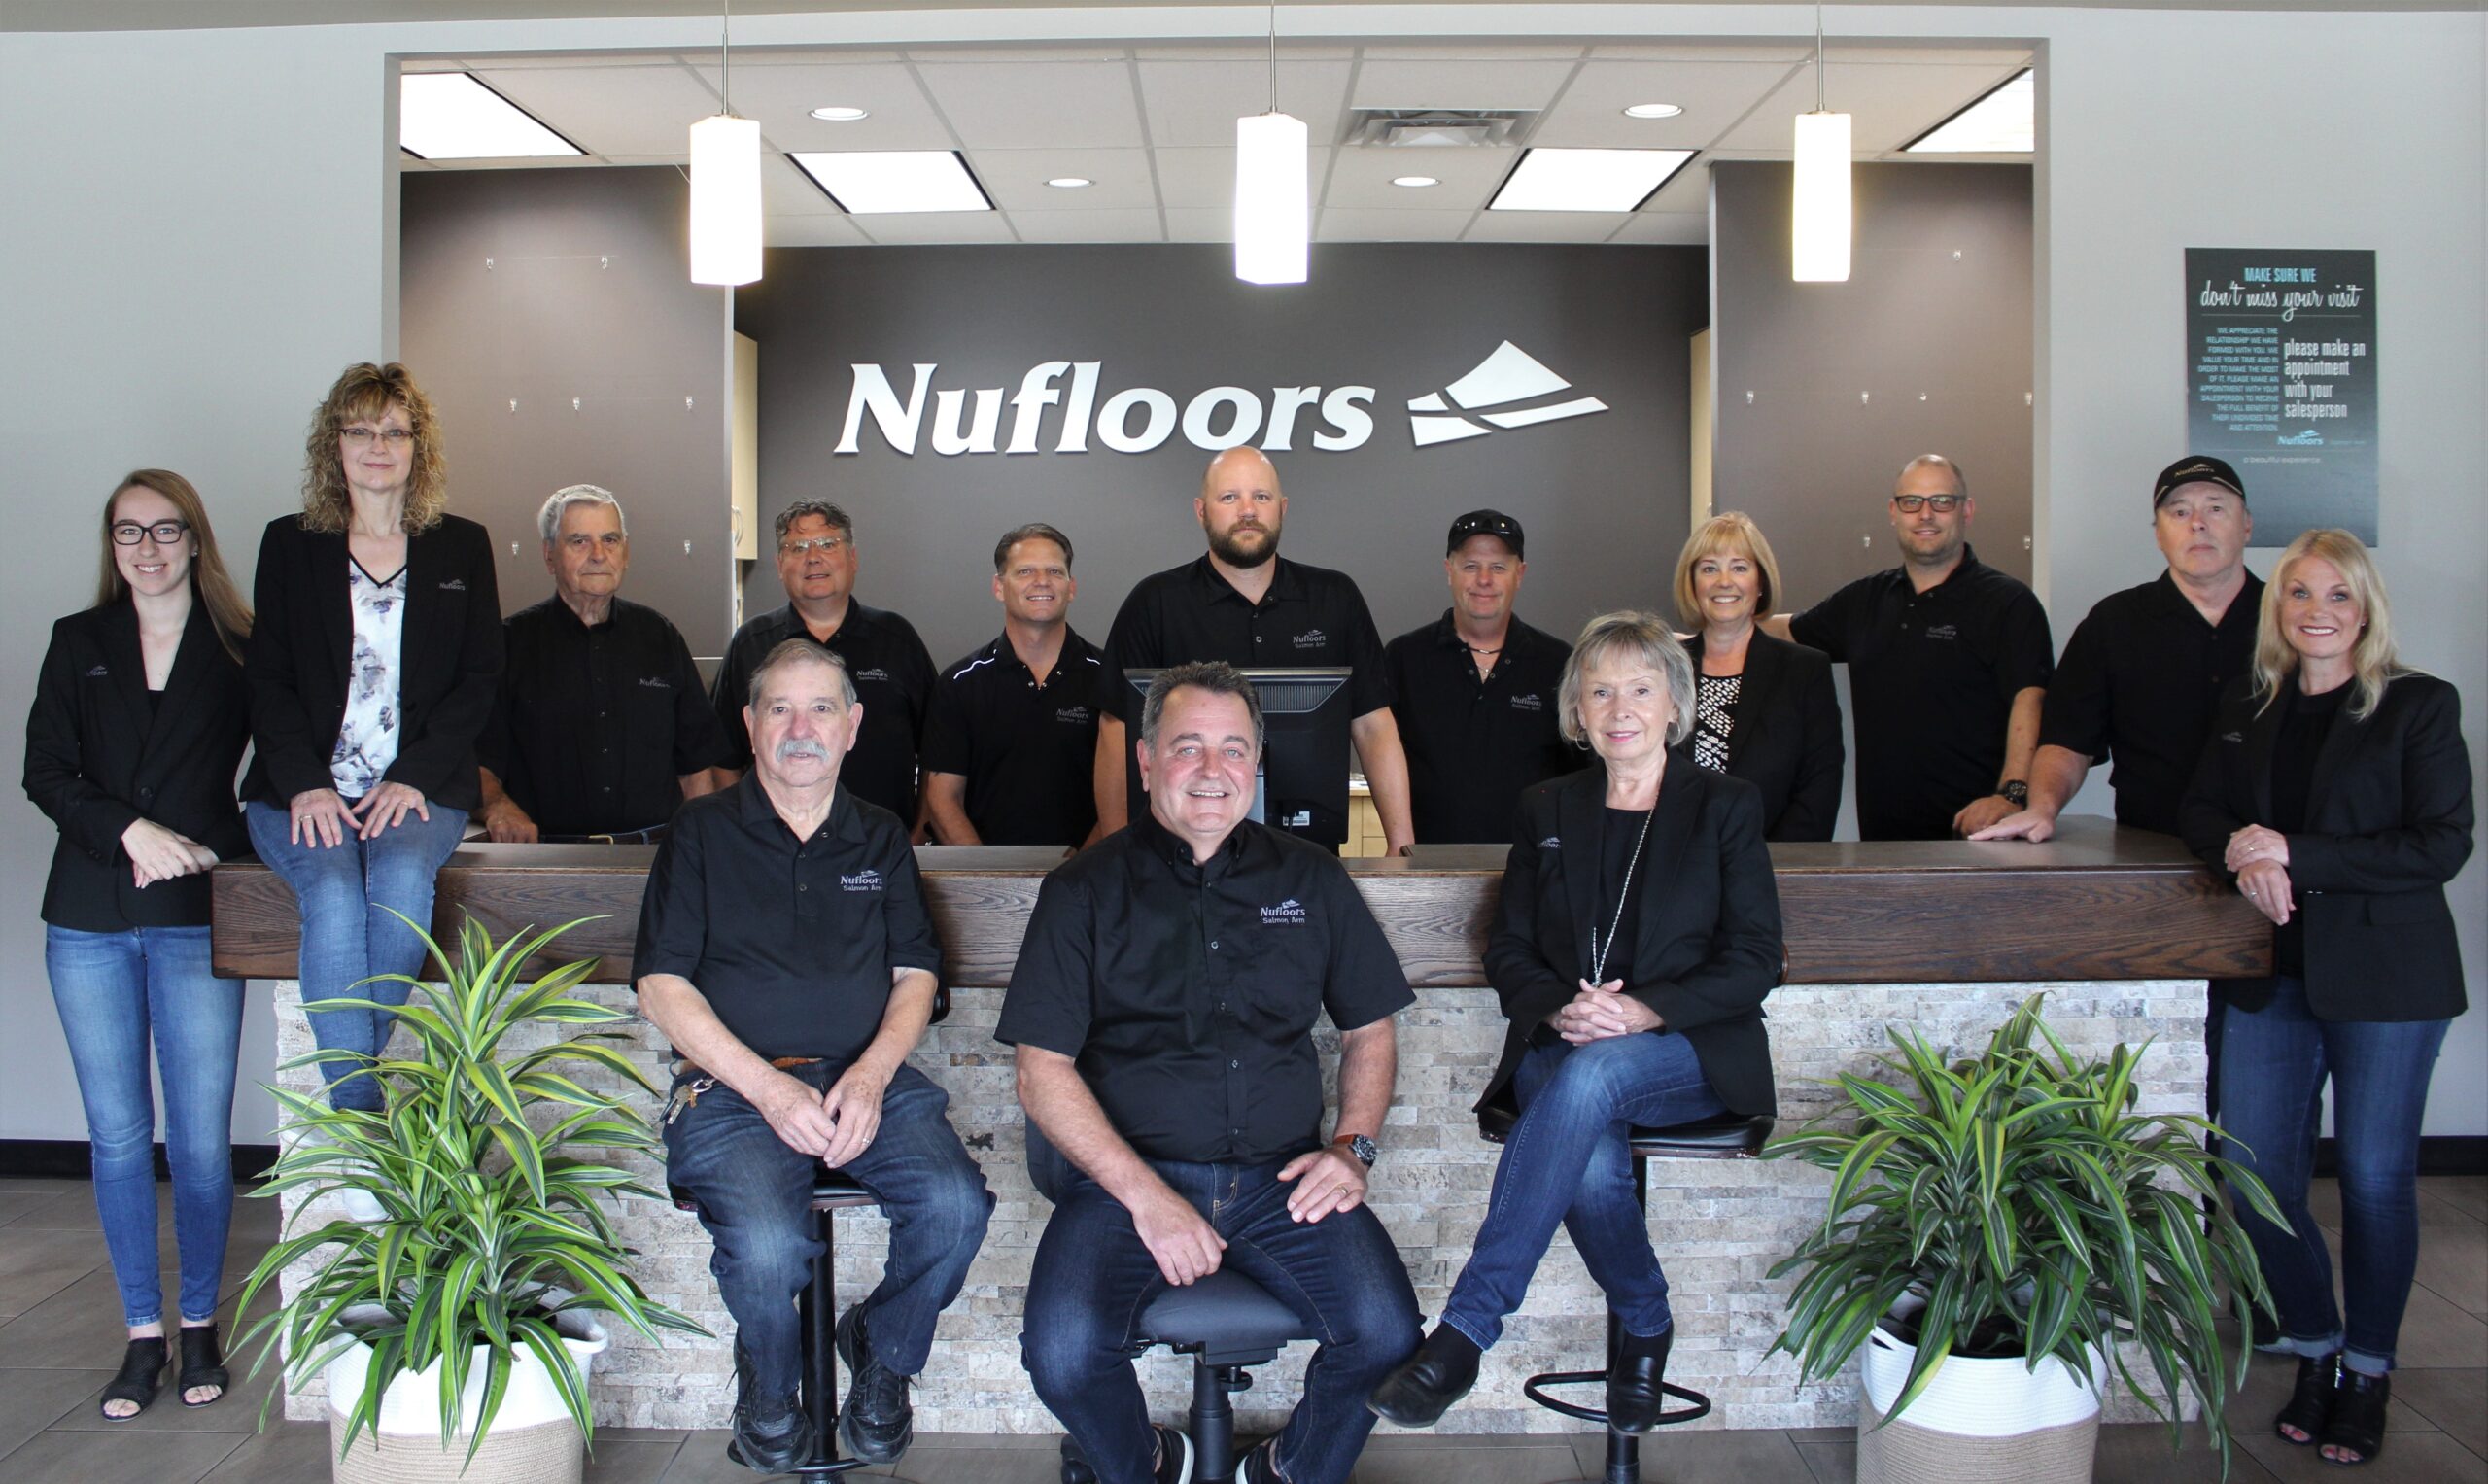 Staff Photo at Nufloors Salmon Arm